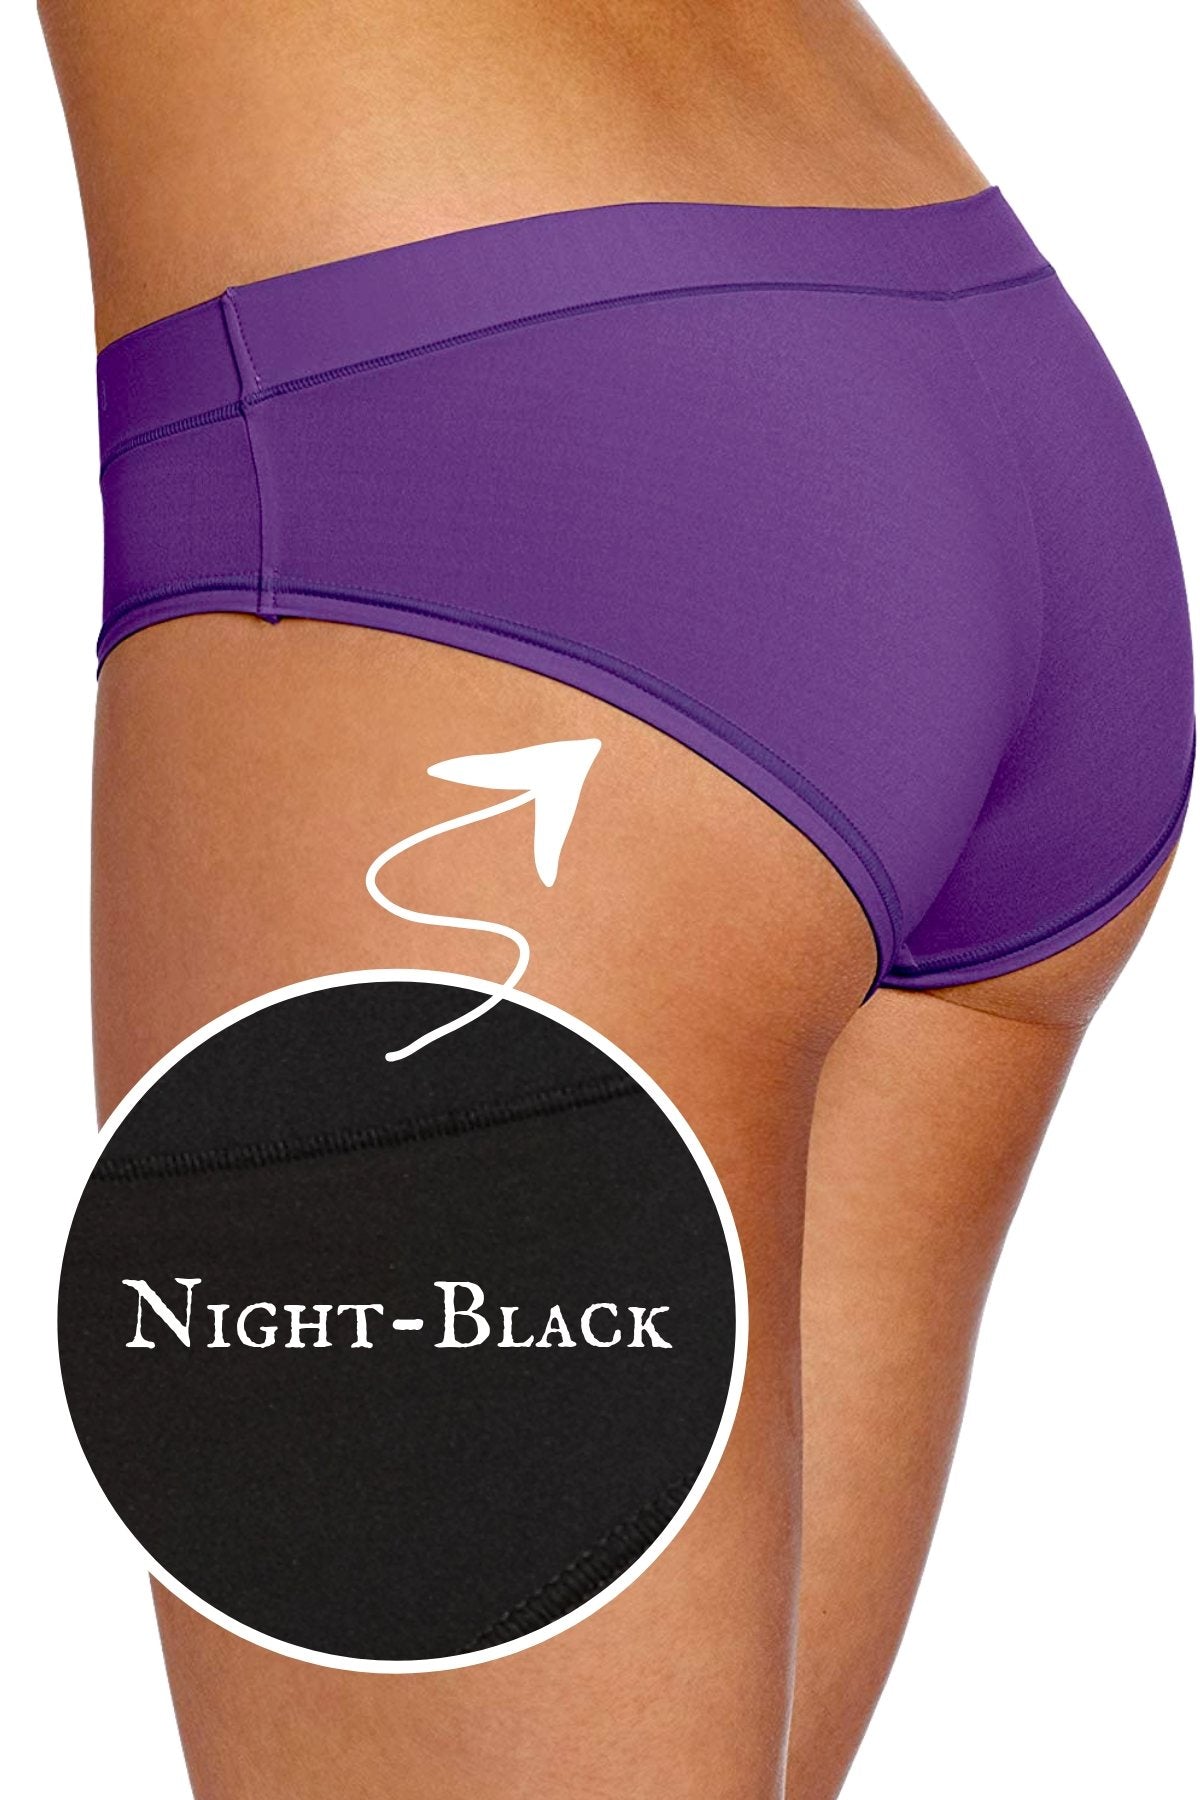 b.tempt'd Night-Black Fits-Me Fits-You Bikini Brief